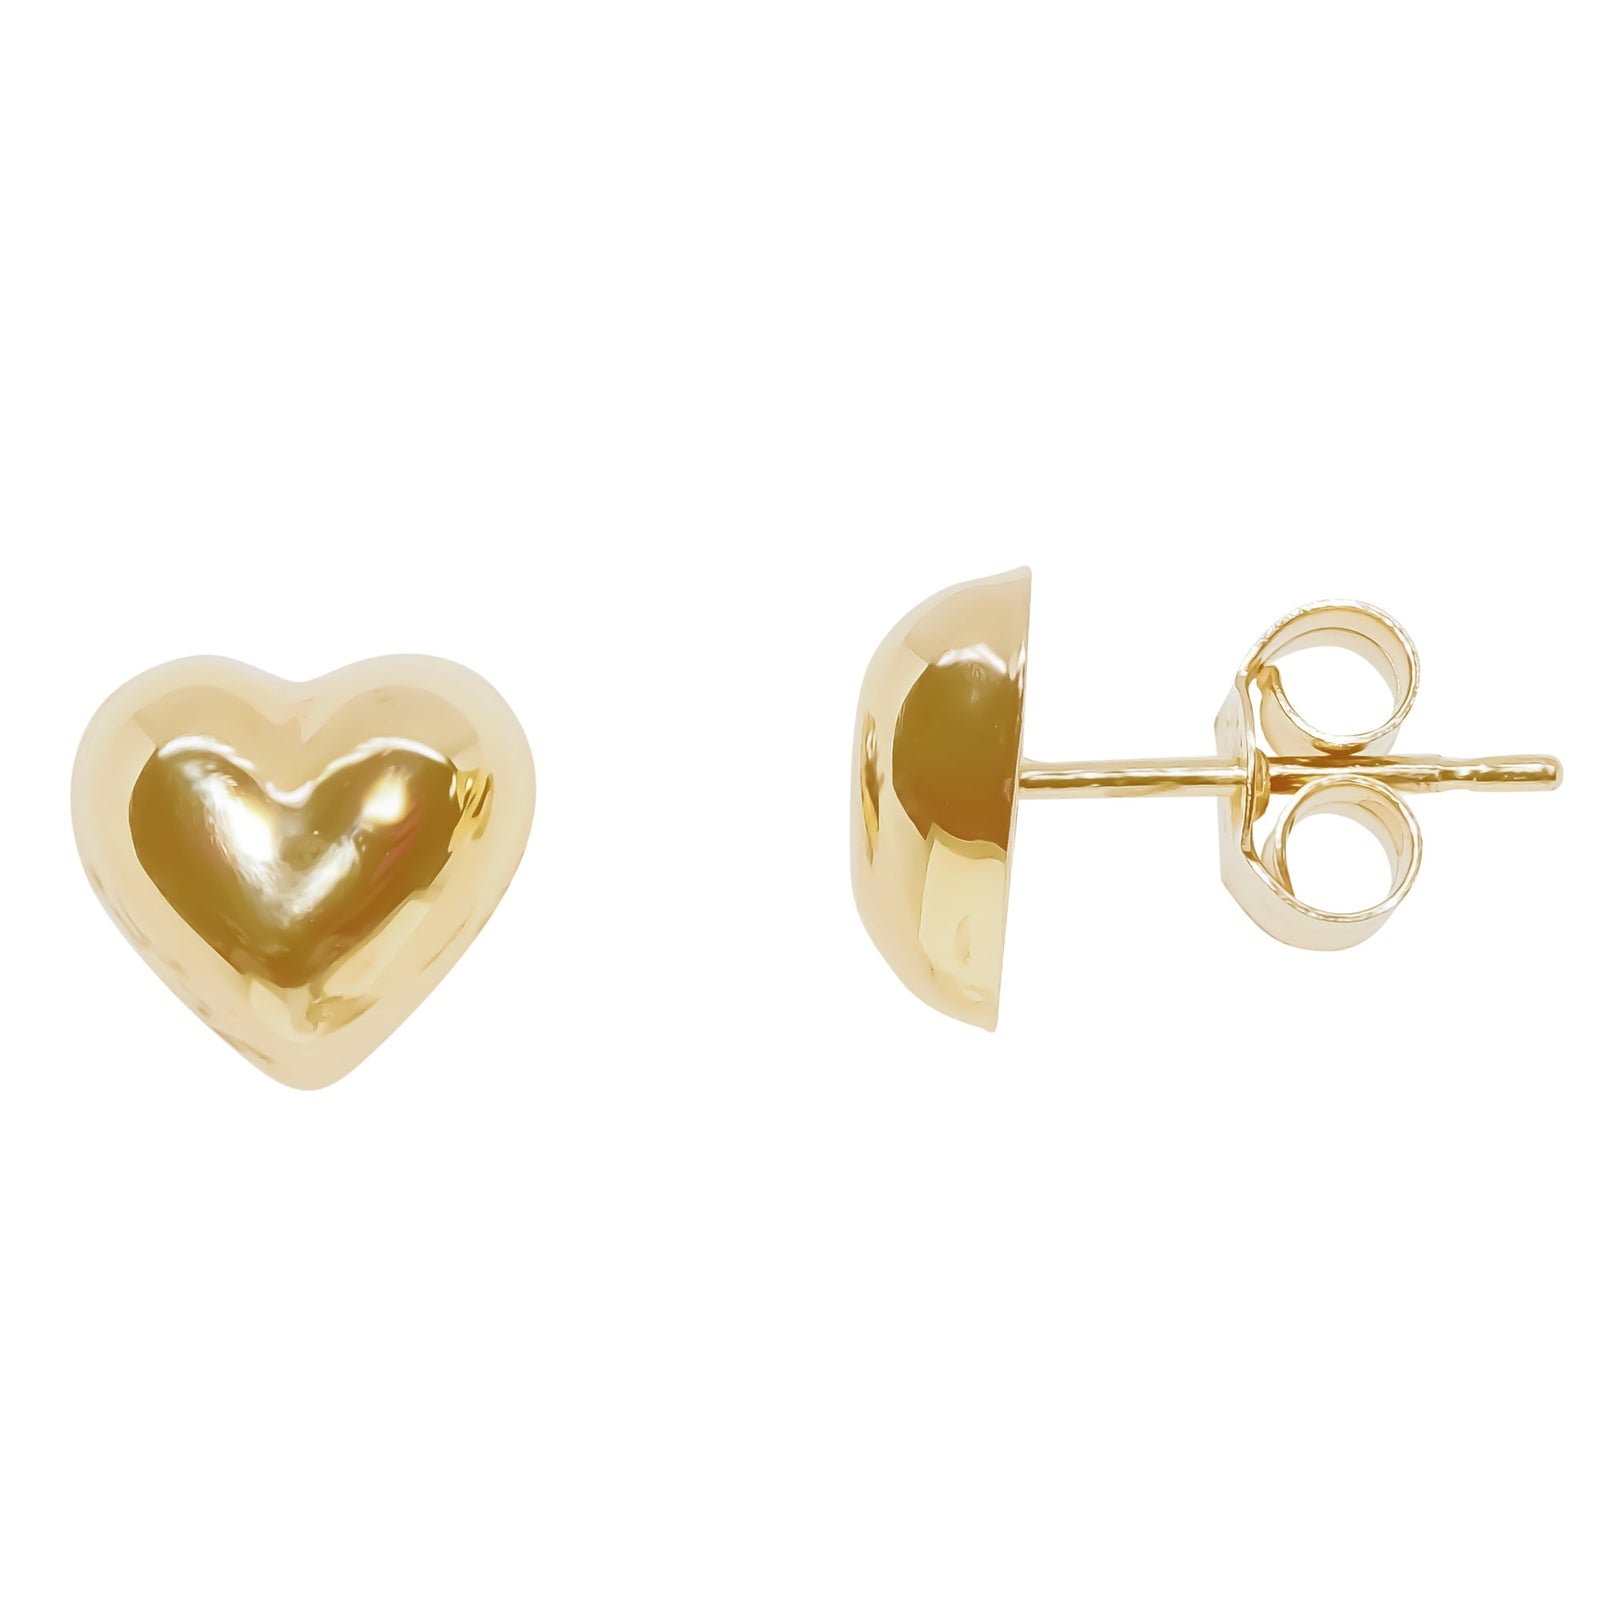 9ct gold 8mm heart shape stud earrings